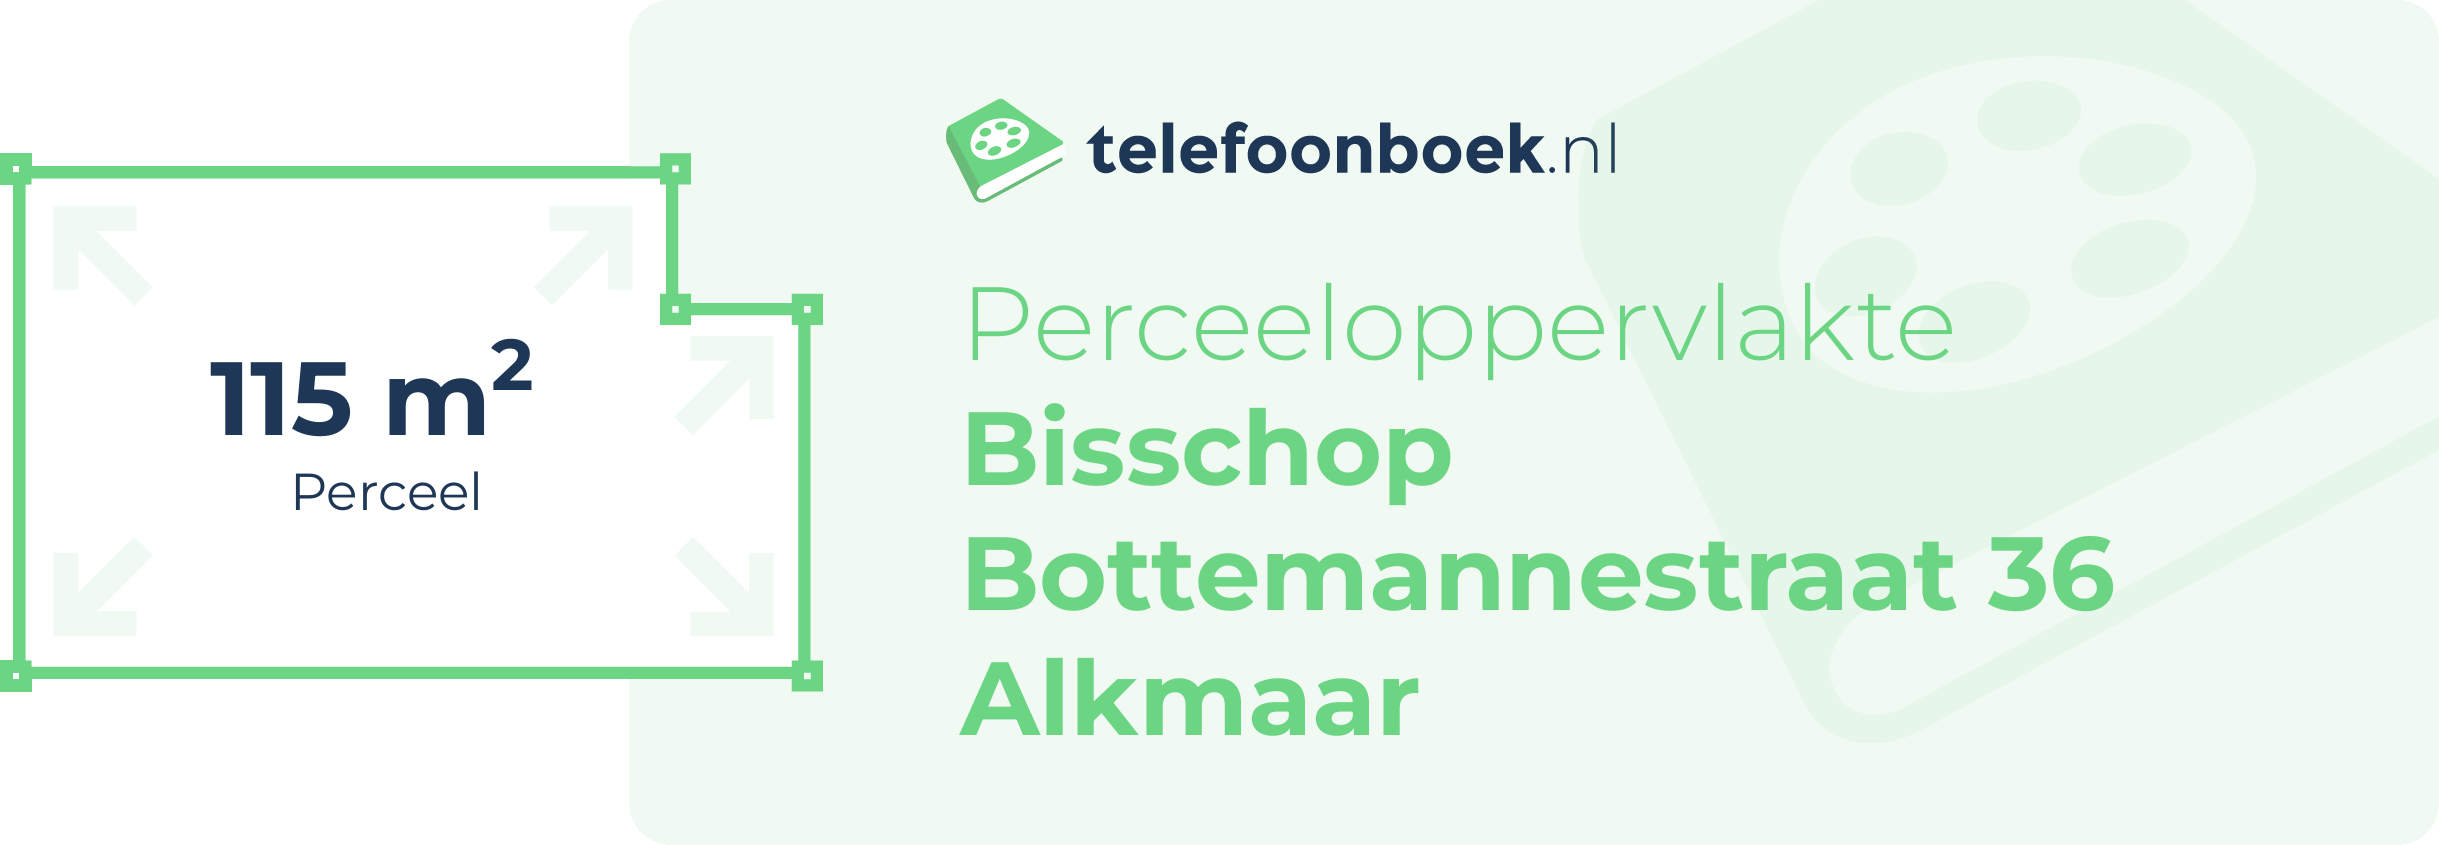 Perceeloppervlakte Bisschop Bottemannestraat 36 Alkmaar